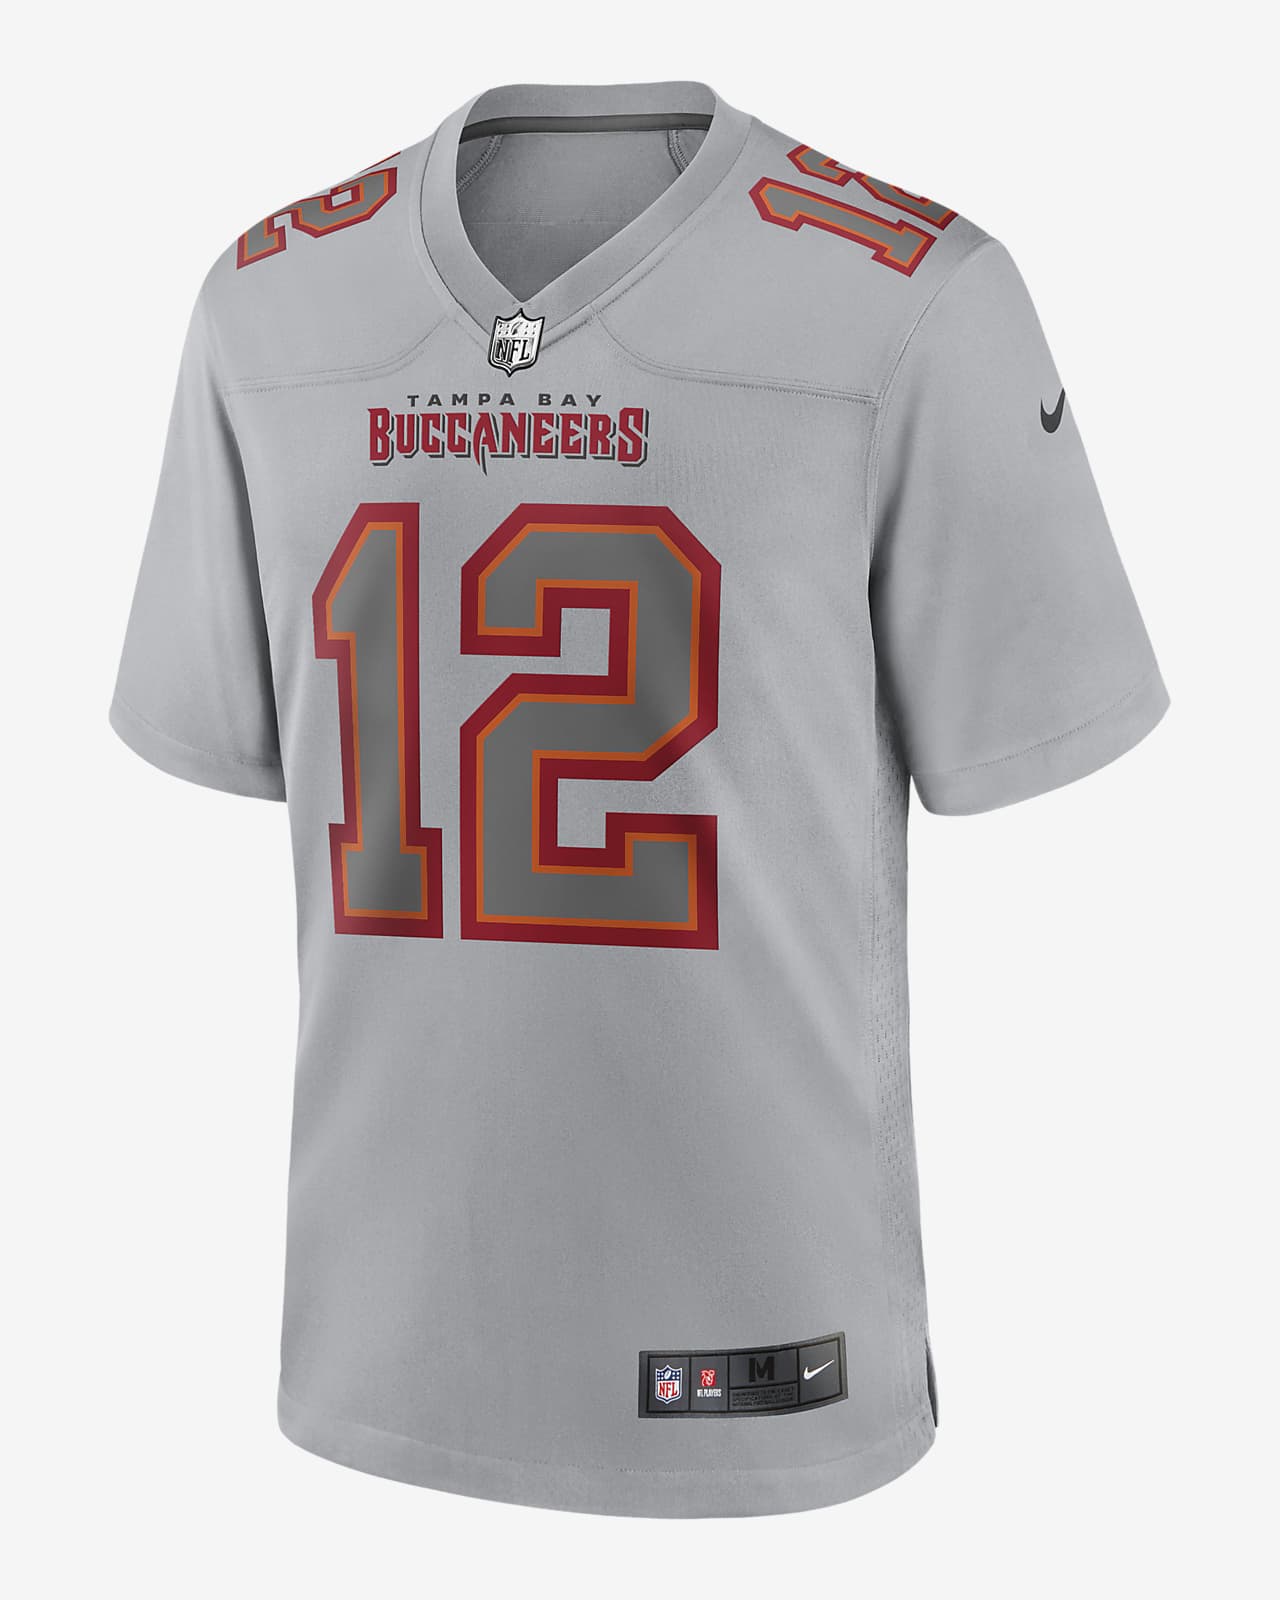 Jersey de fútbol americano a la moda para hombre Tampa Bay Buccaneers Atmosphere de la NFL (Tom Brady)